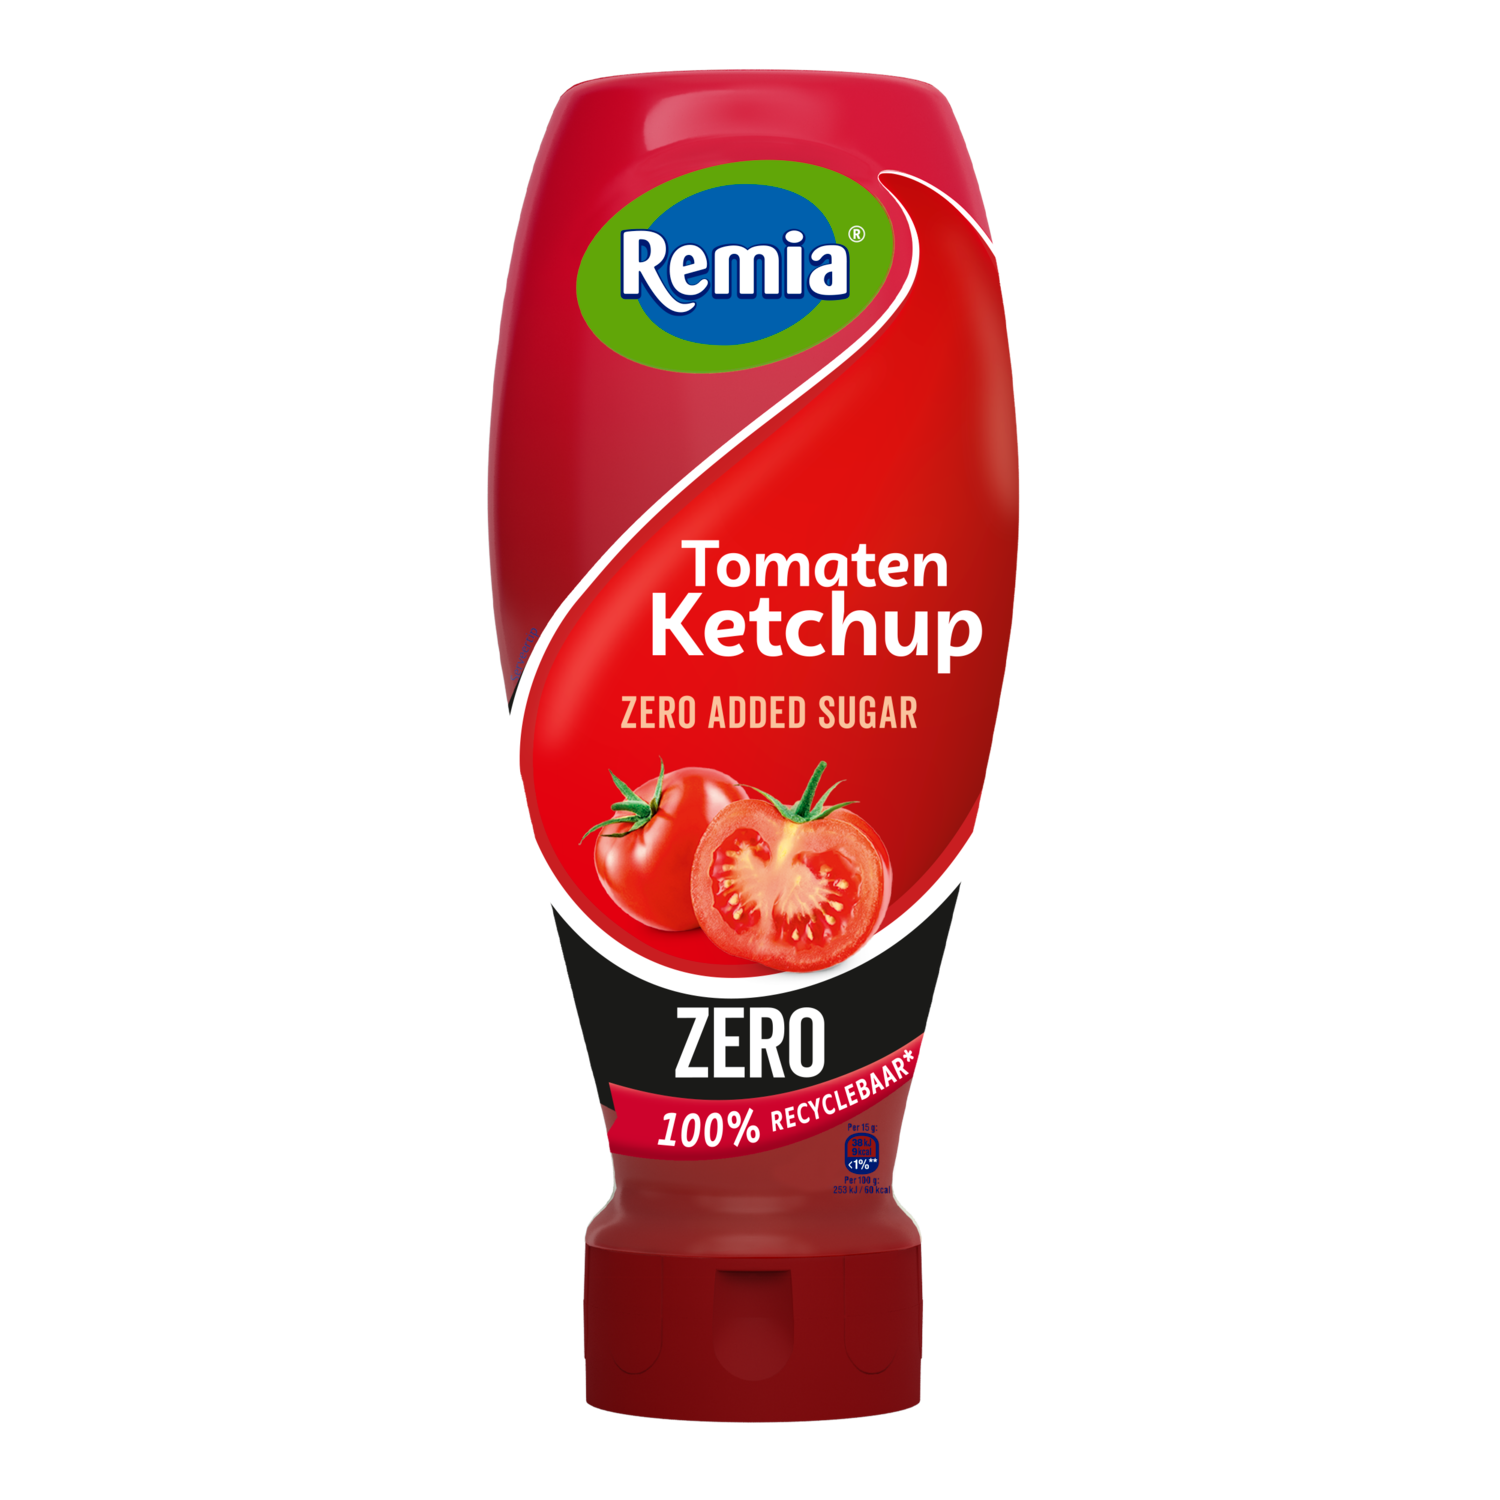 Remia Tomaten ketchup zero DekaMarkt